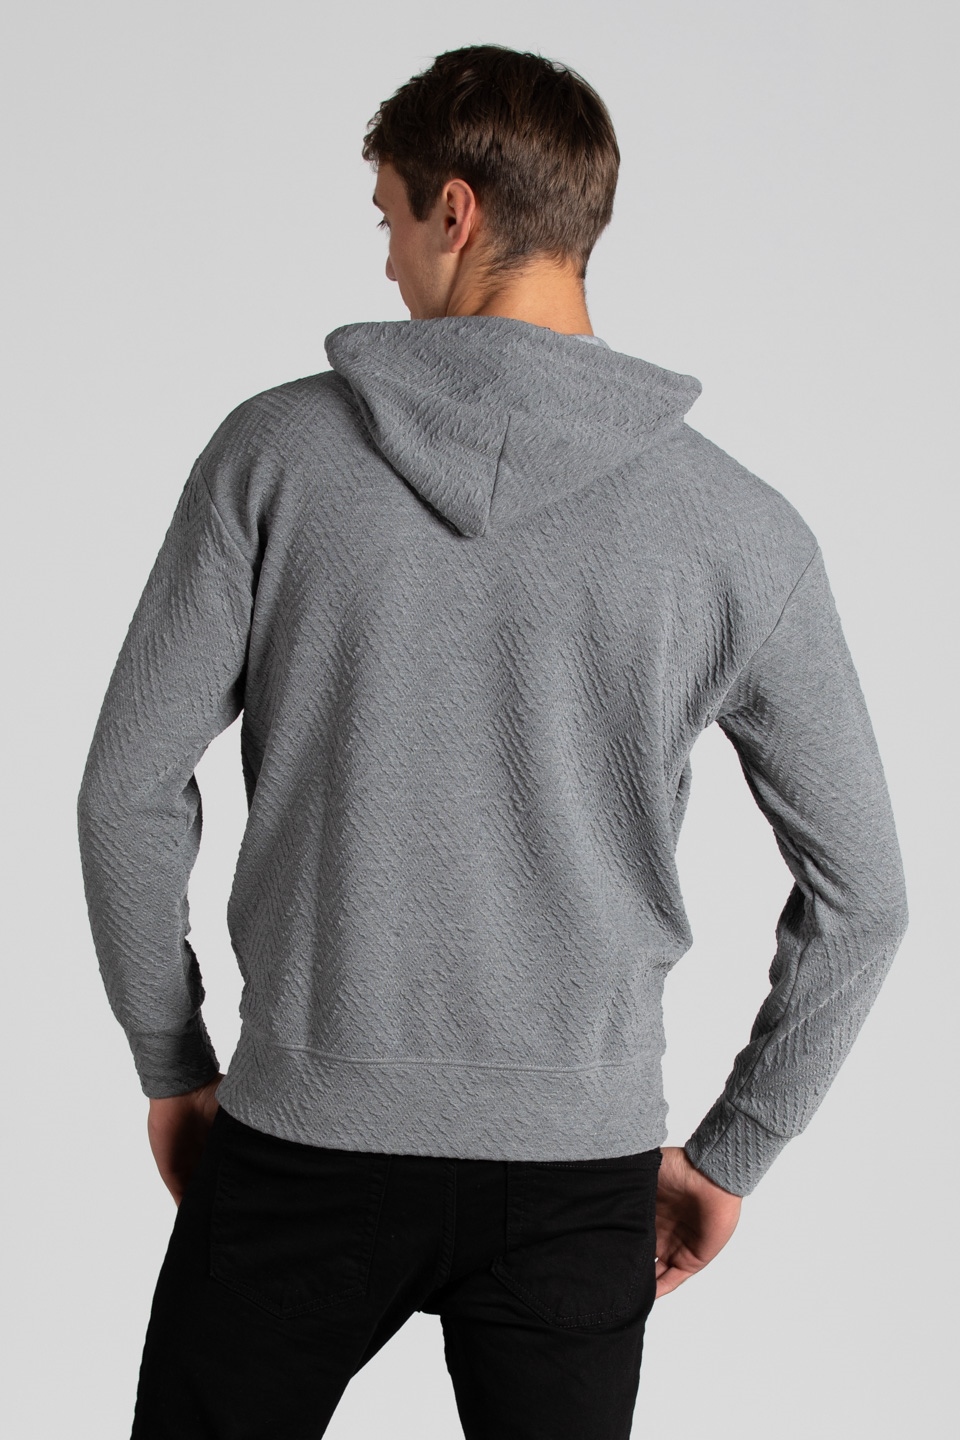 Kapüşonlu jakar örme sweatshirt-9001 Gri Melanj